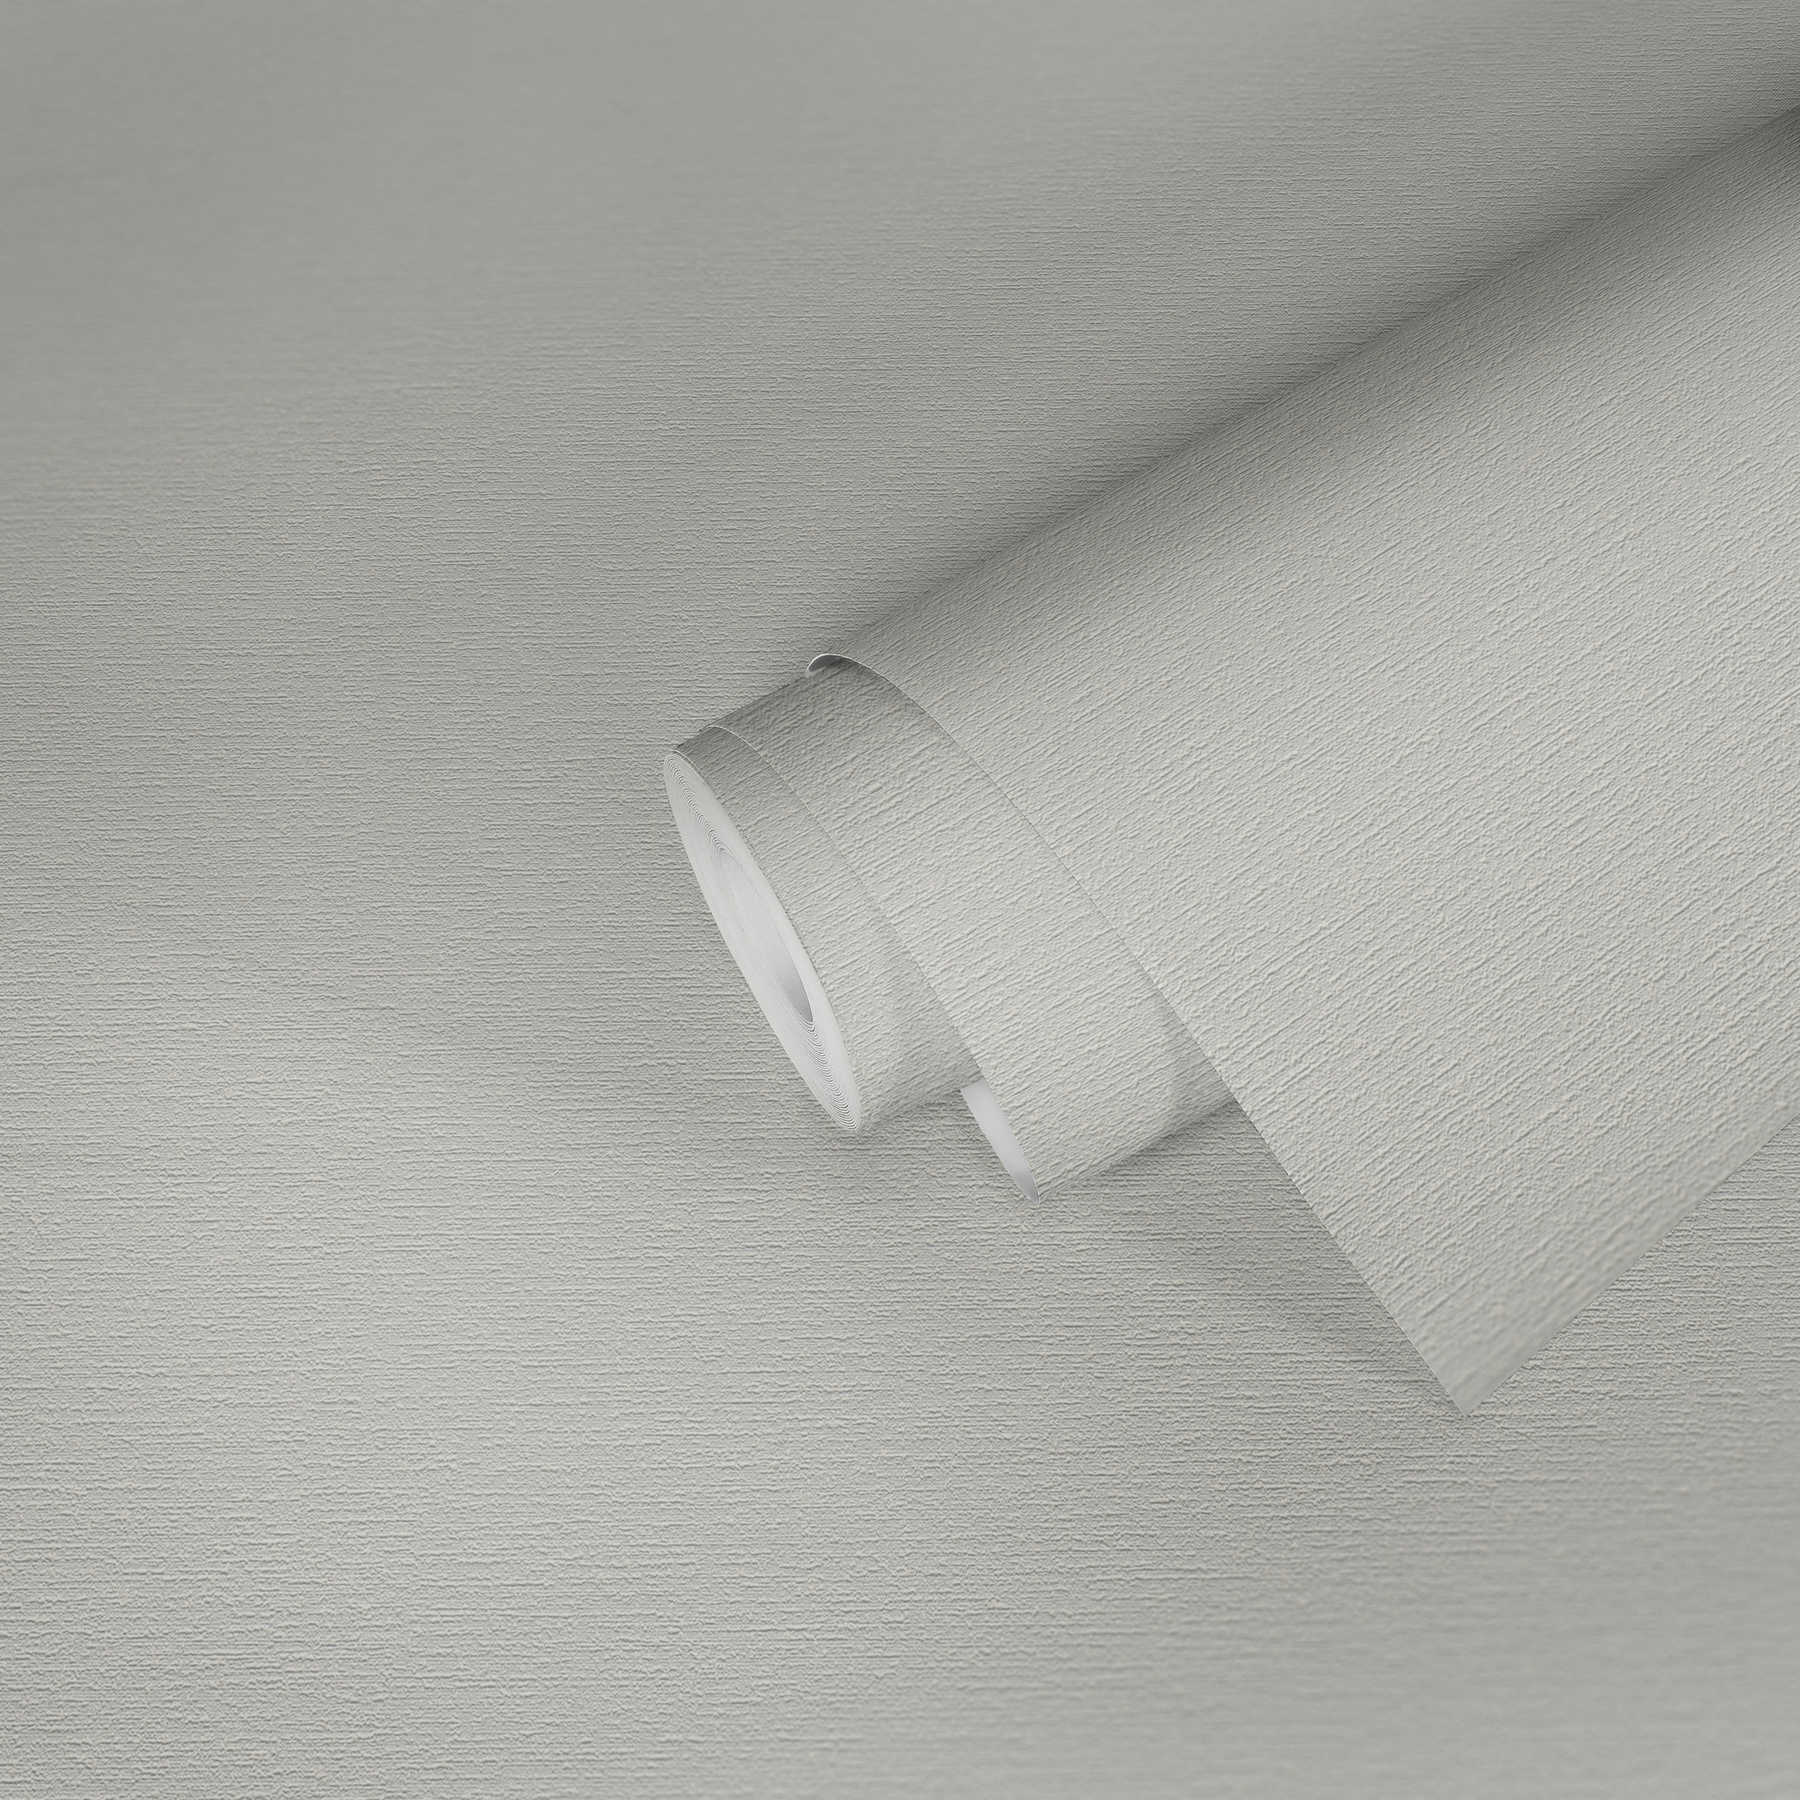             Carta da parati bianca in tessuto non tessuto a tinta unita con motivo strutturato
        